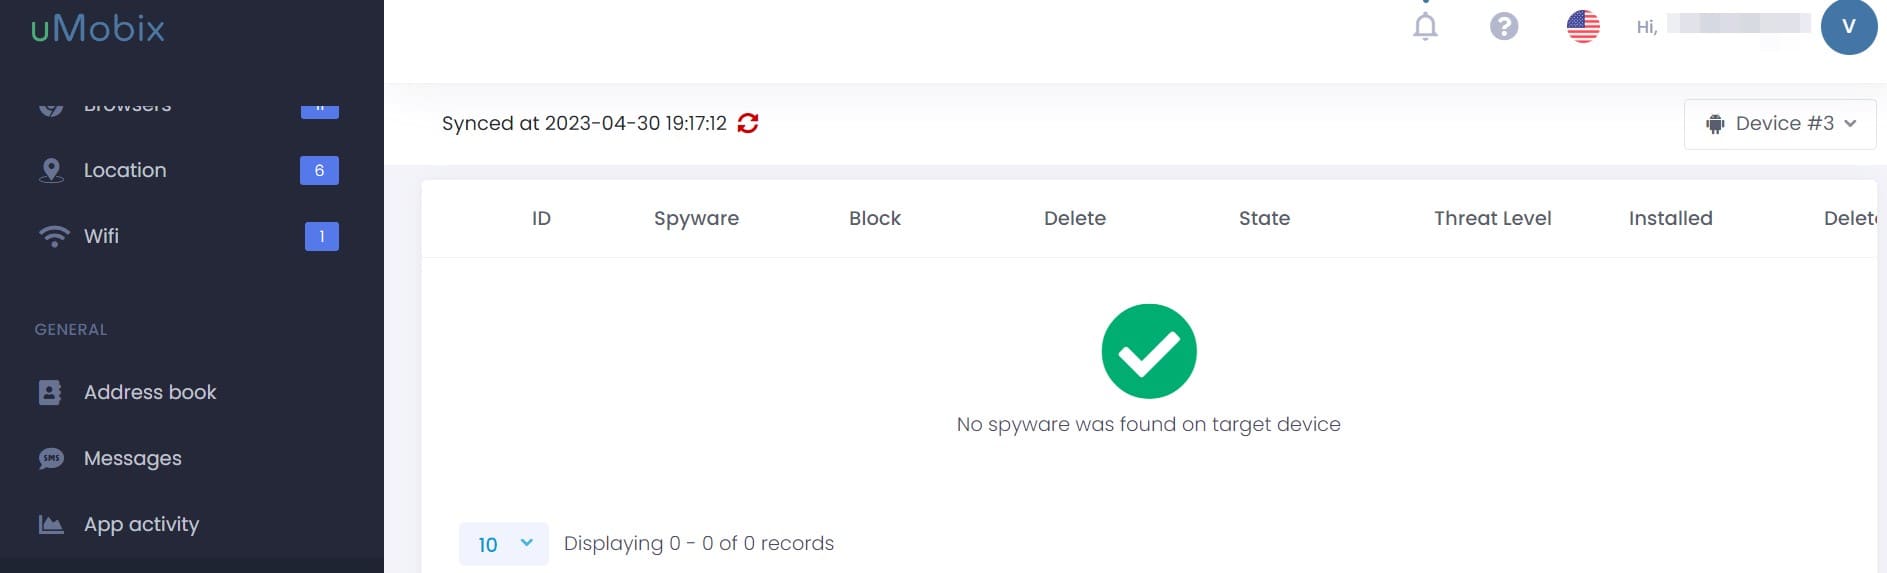 La scheda di monitoraggio Spyware sulla dashboard di uMobix